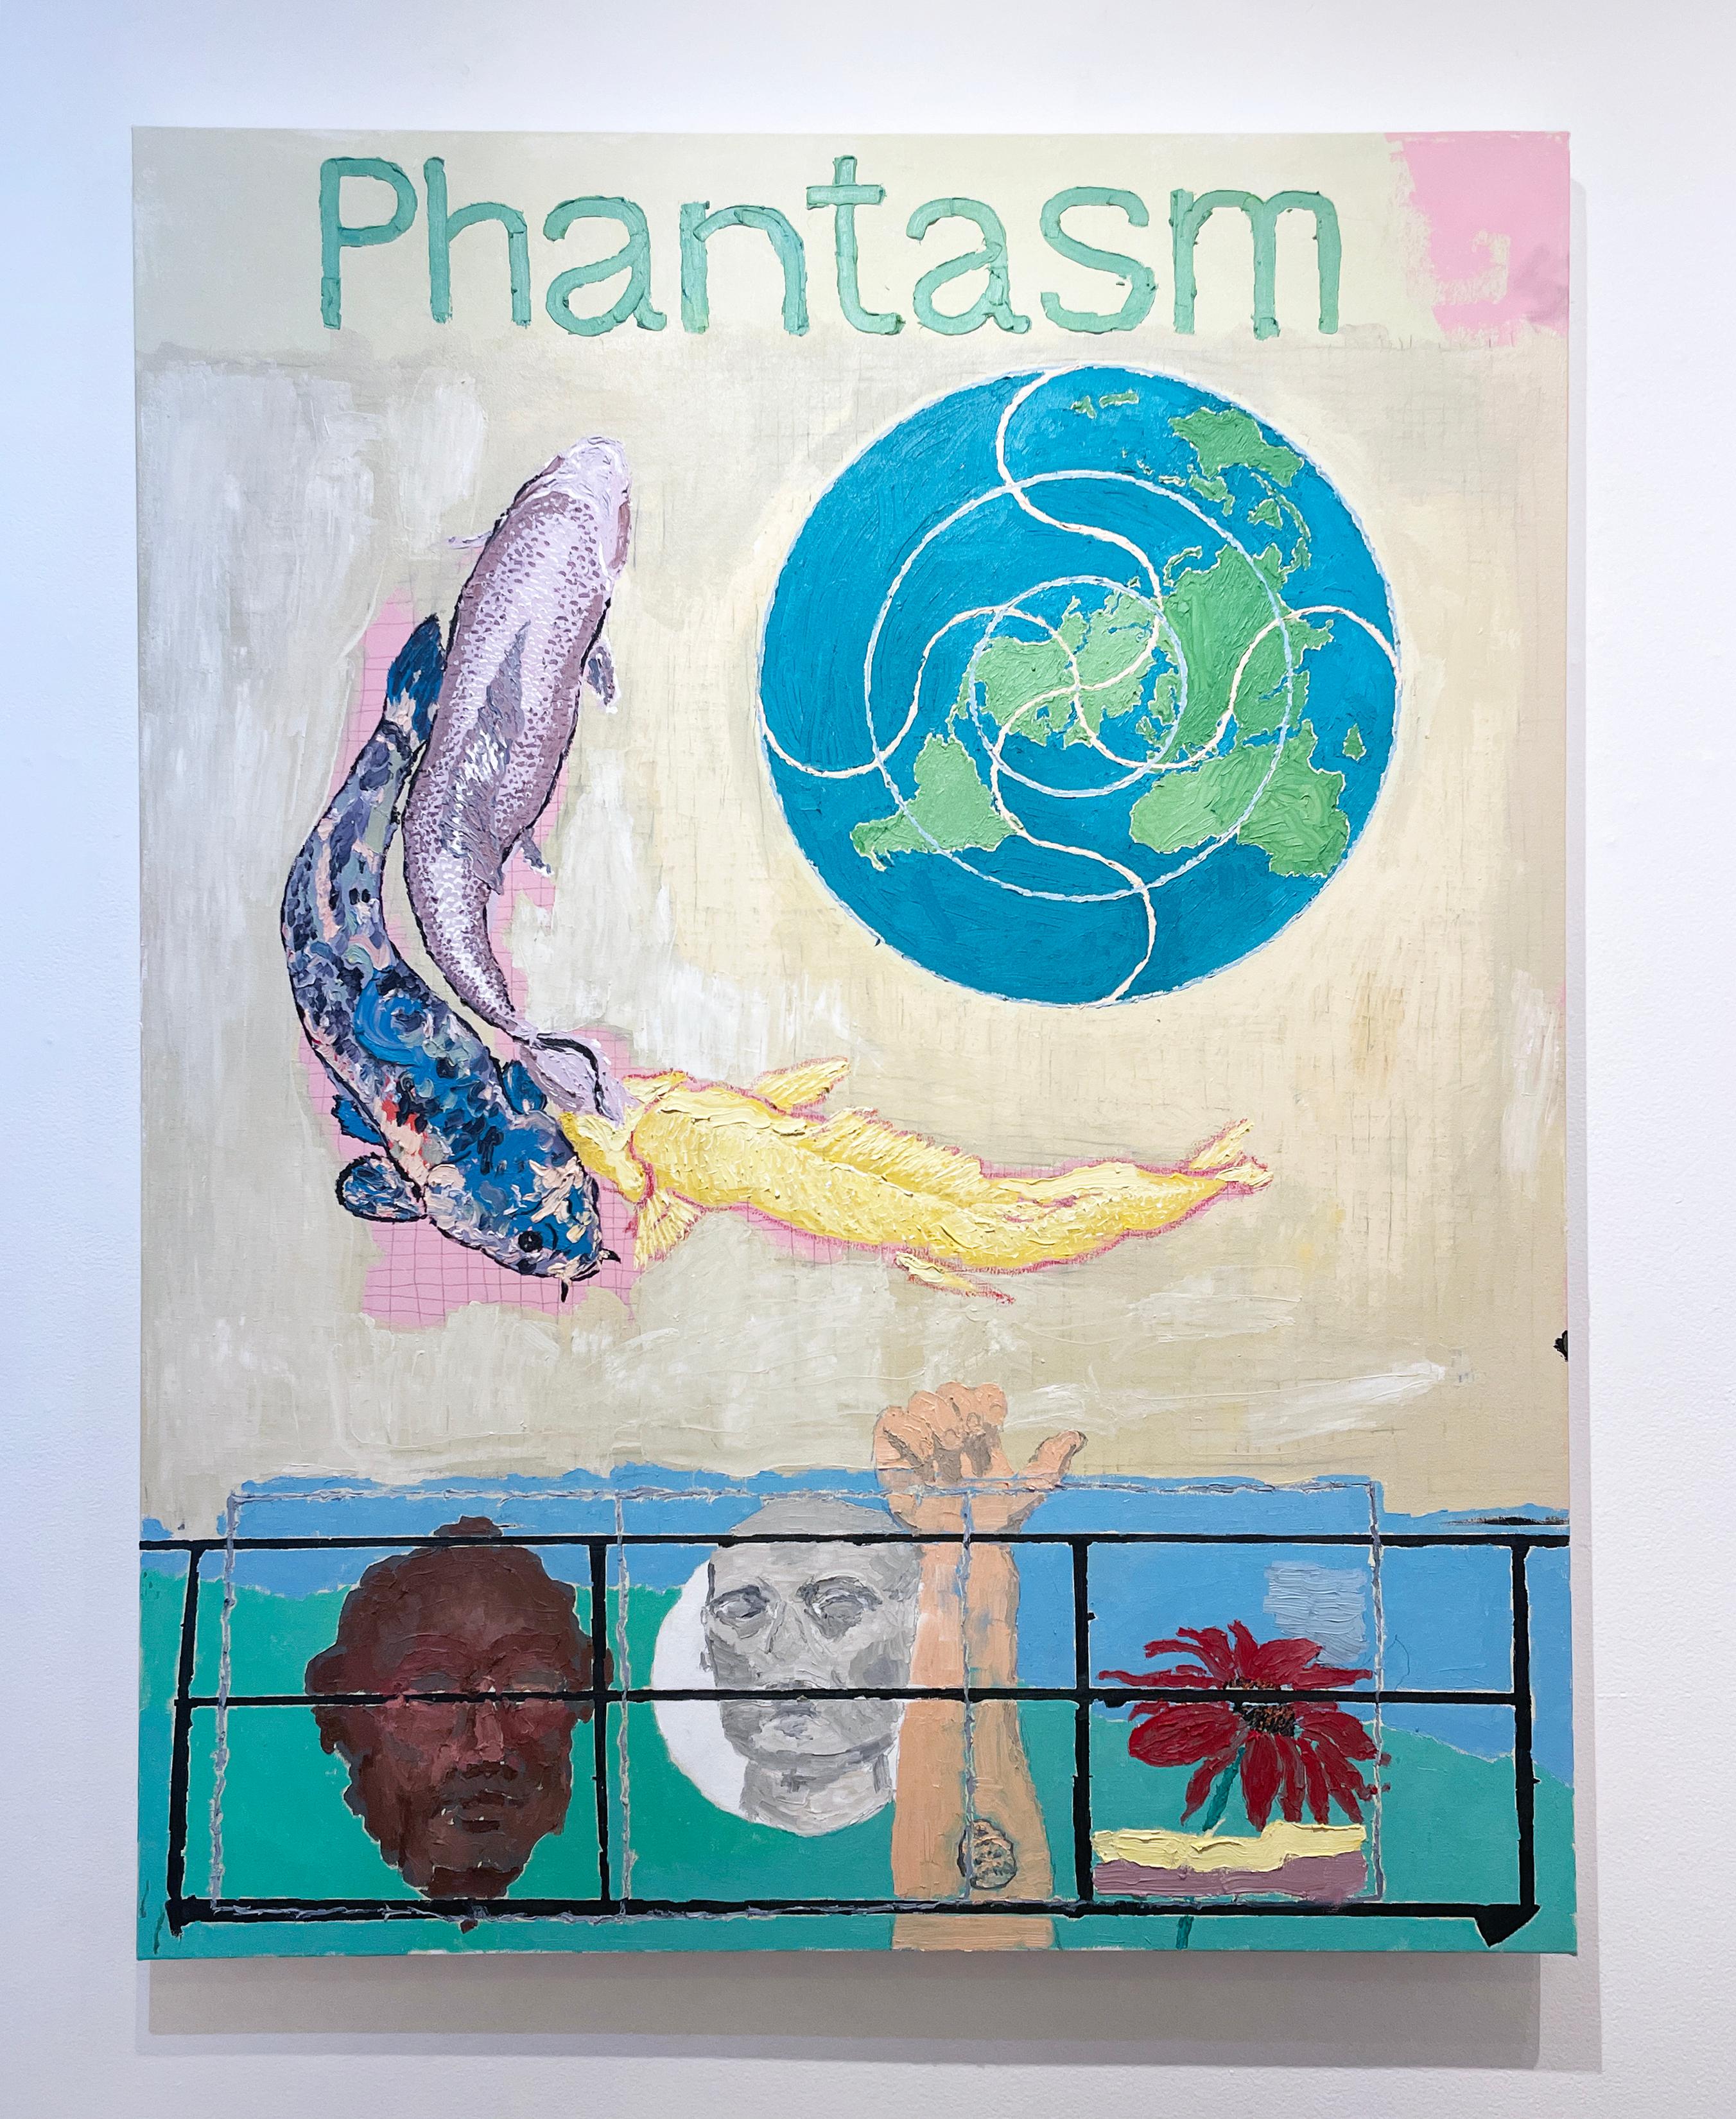 Phantasm - Painting by Macauley Norman